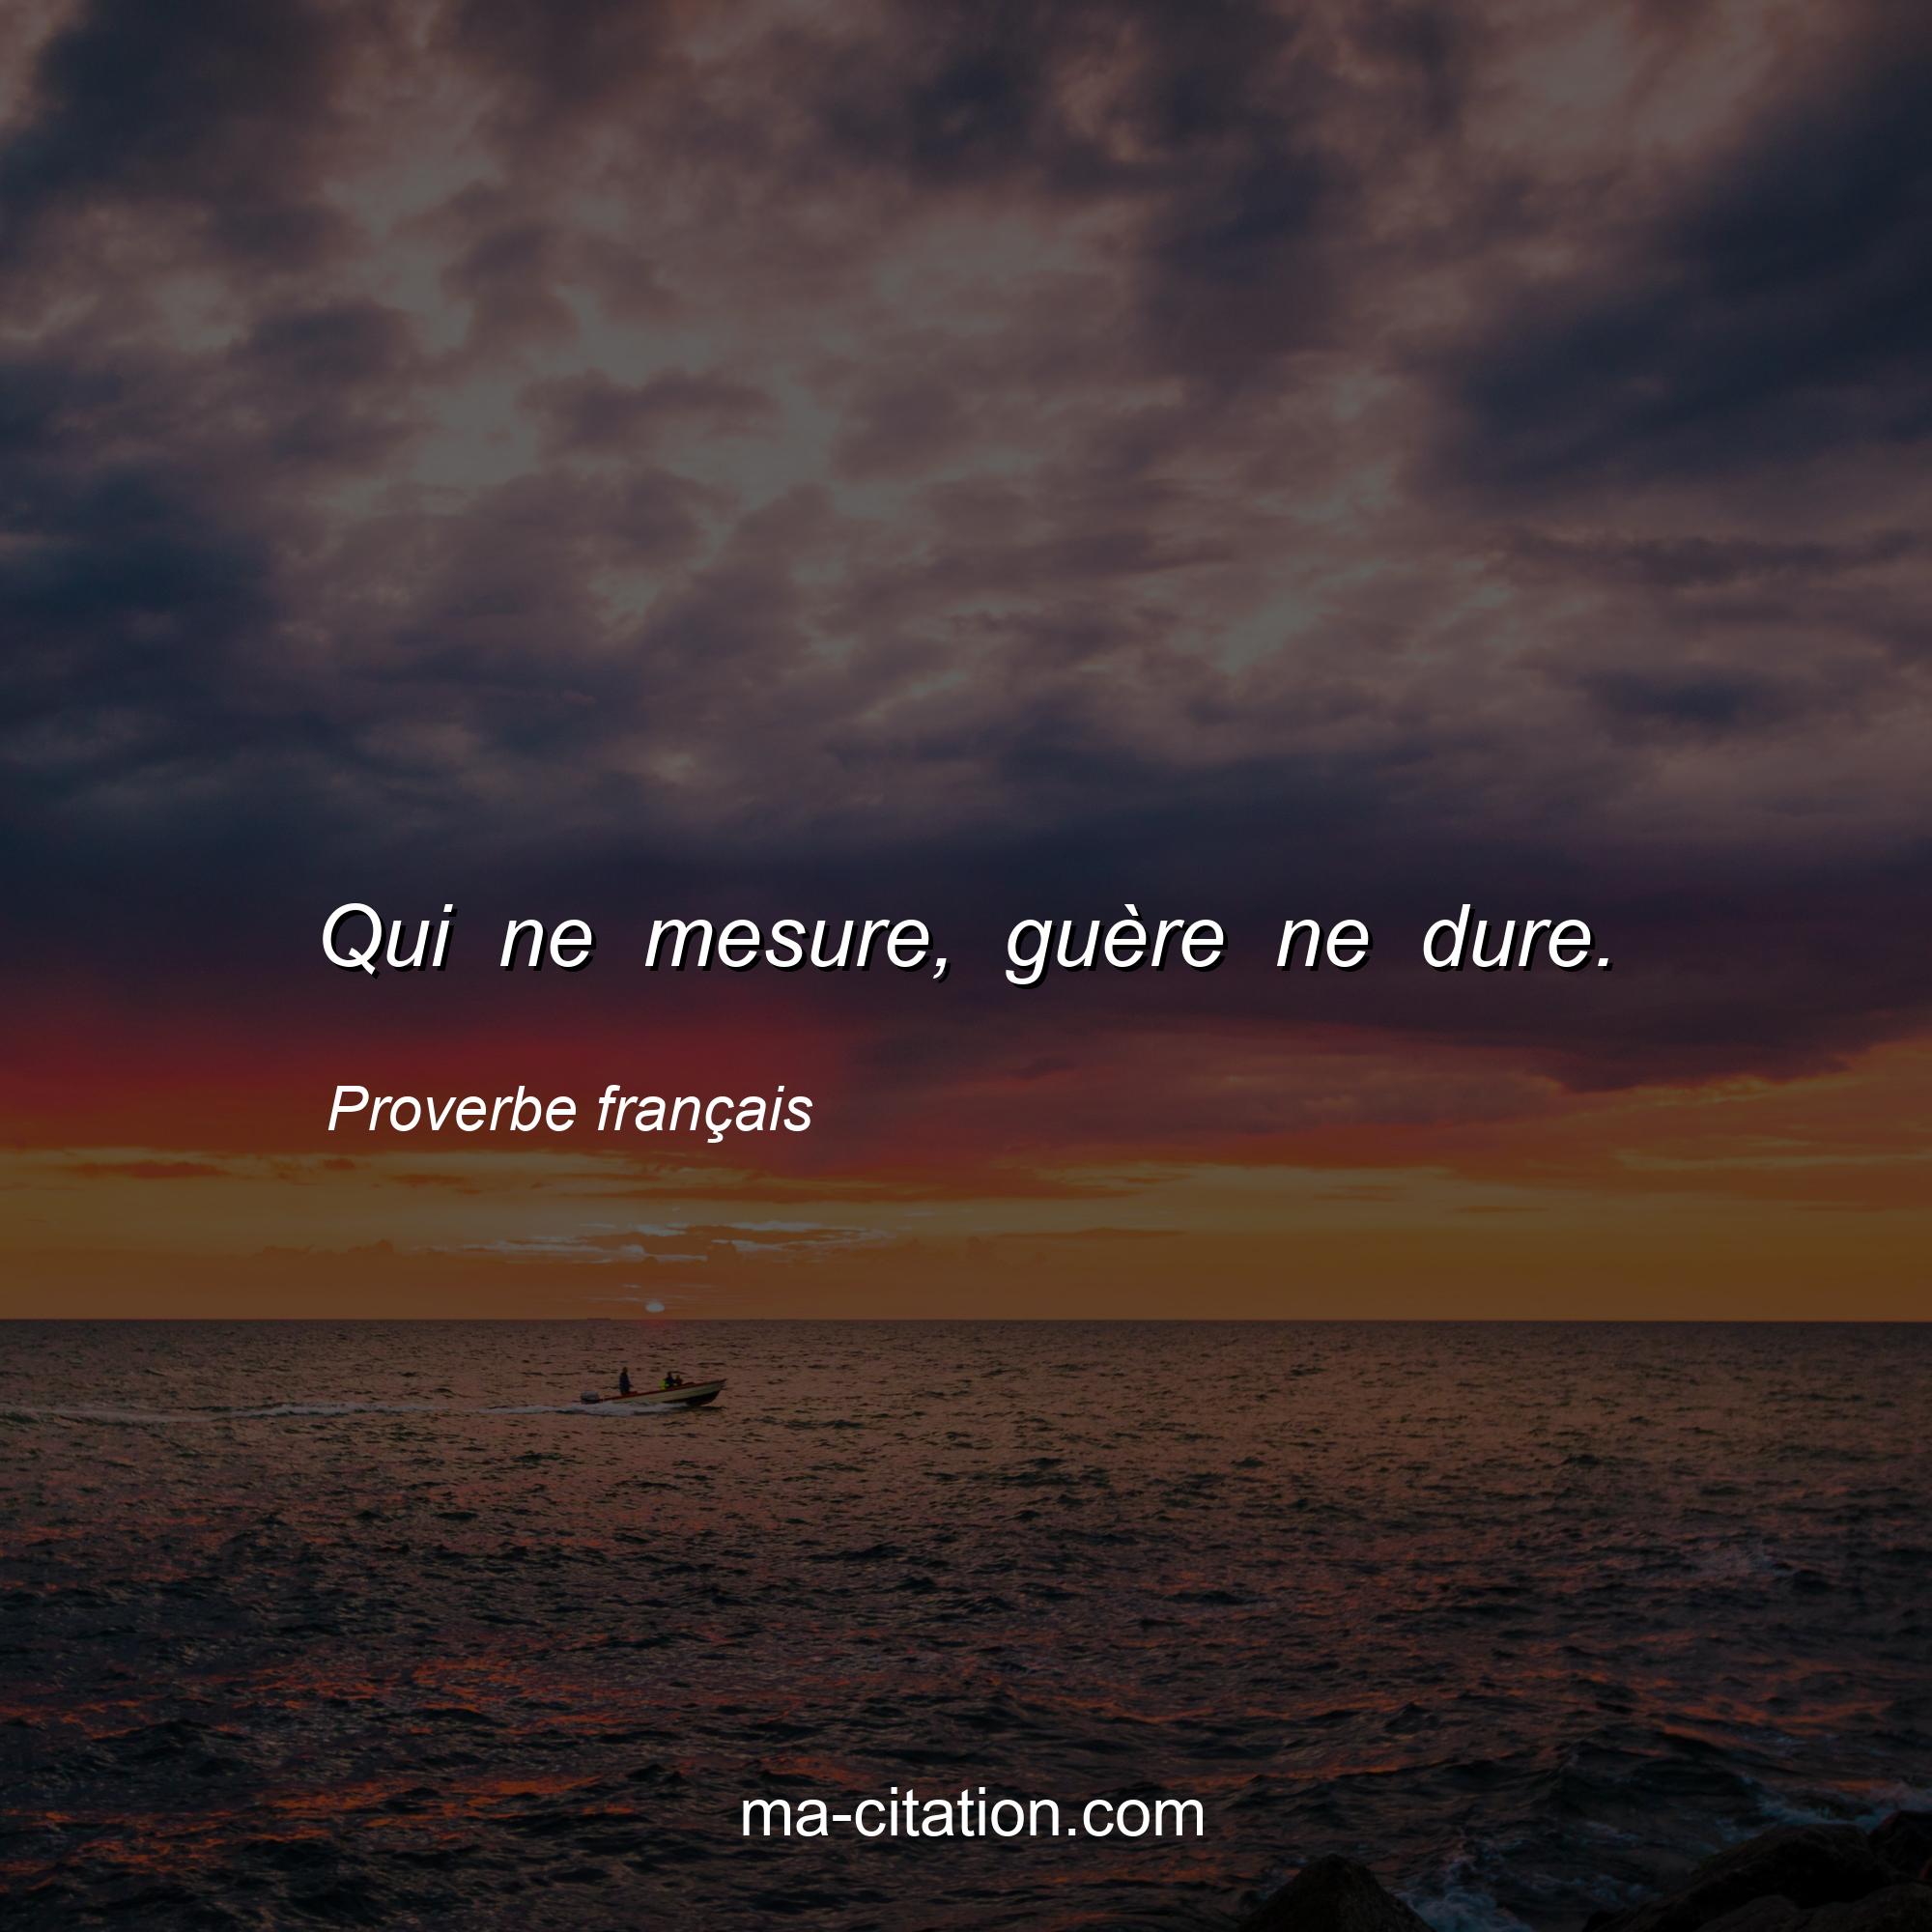 Proverbe français : Qui ne mesure, guère ne dure.